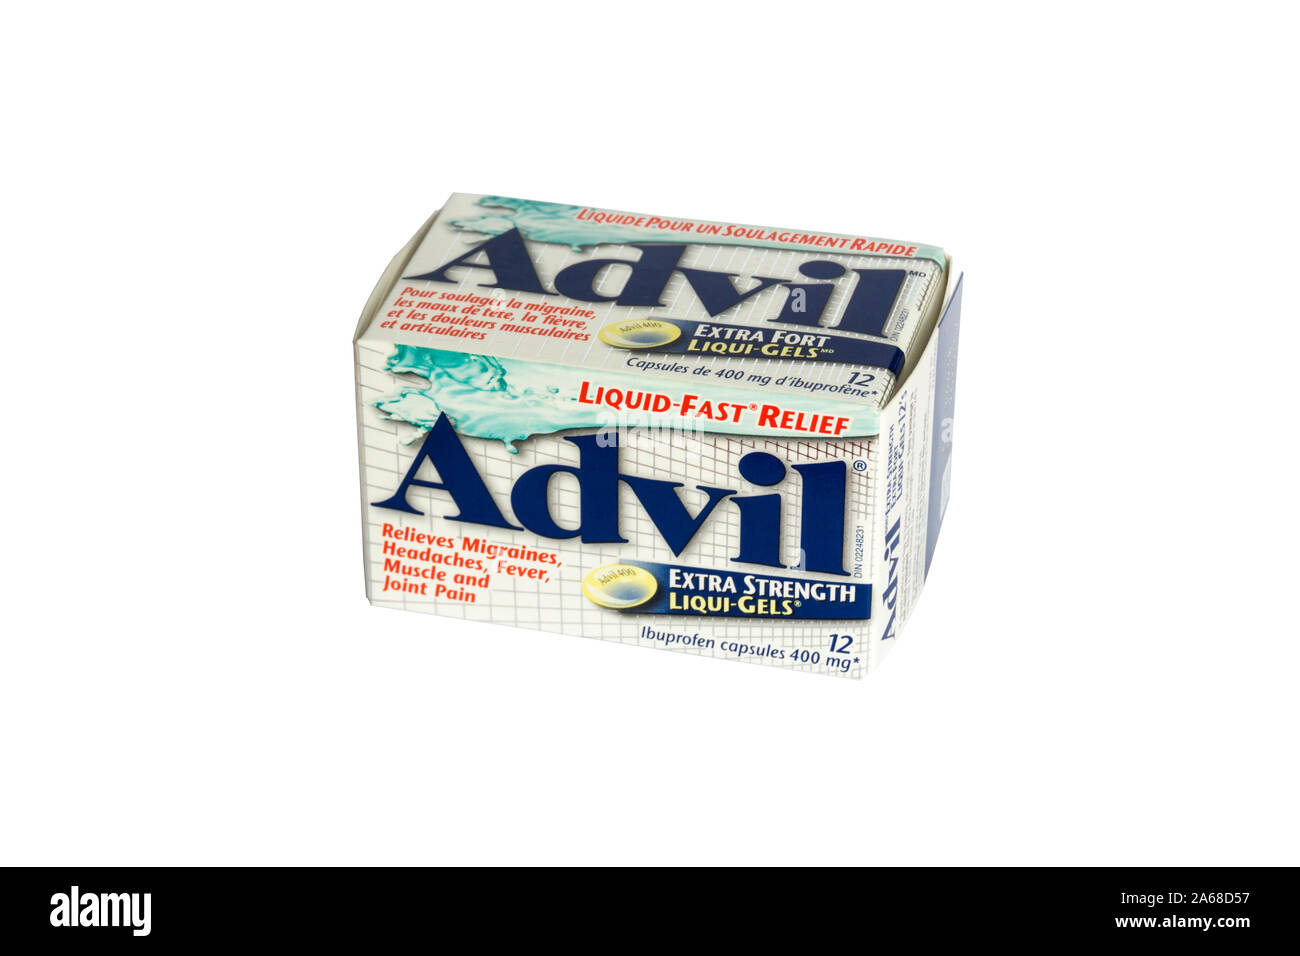 Une boîte d'Advil Ibuprofen de capsules. L'Advil est un nom commercial pour l'ibuprofène, un anti-inflammatoire non stéroïdien. Banque D'Images